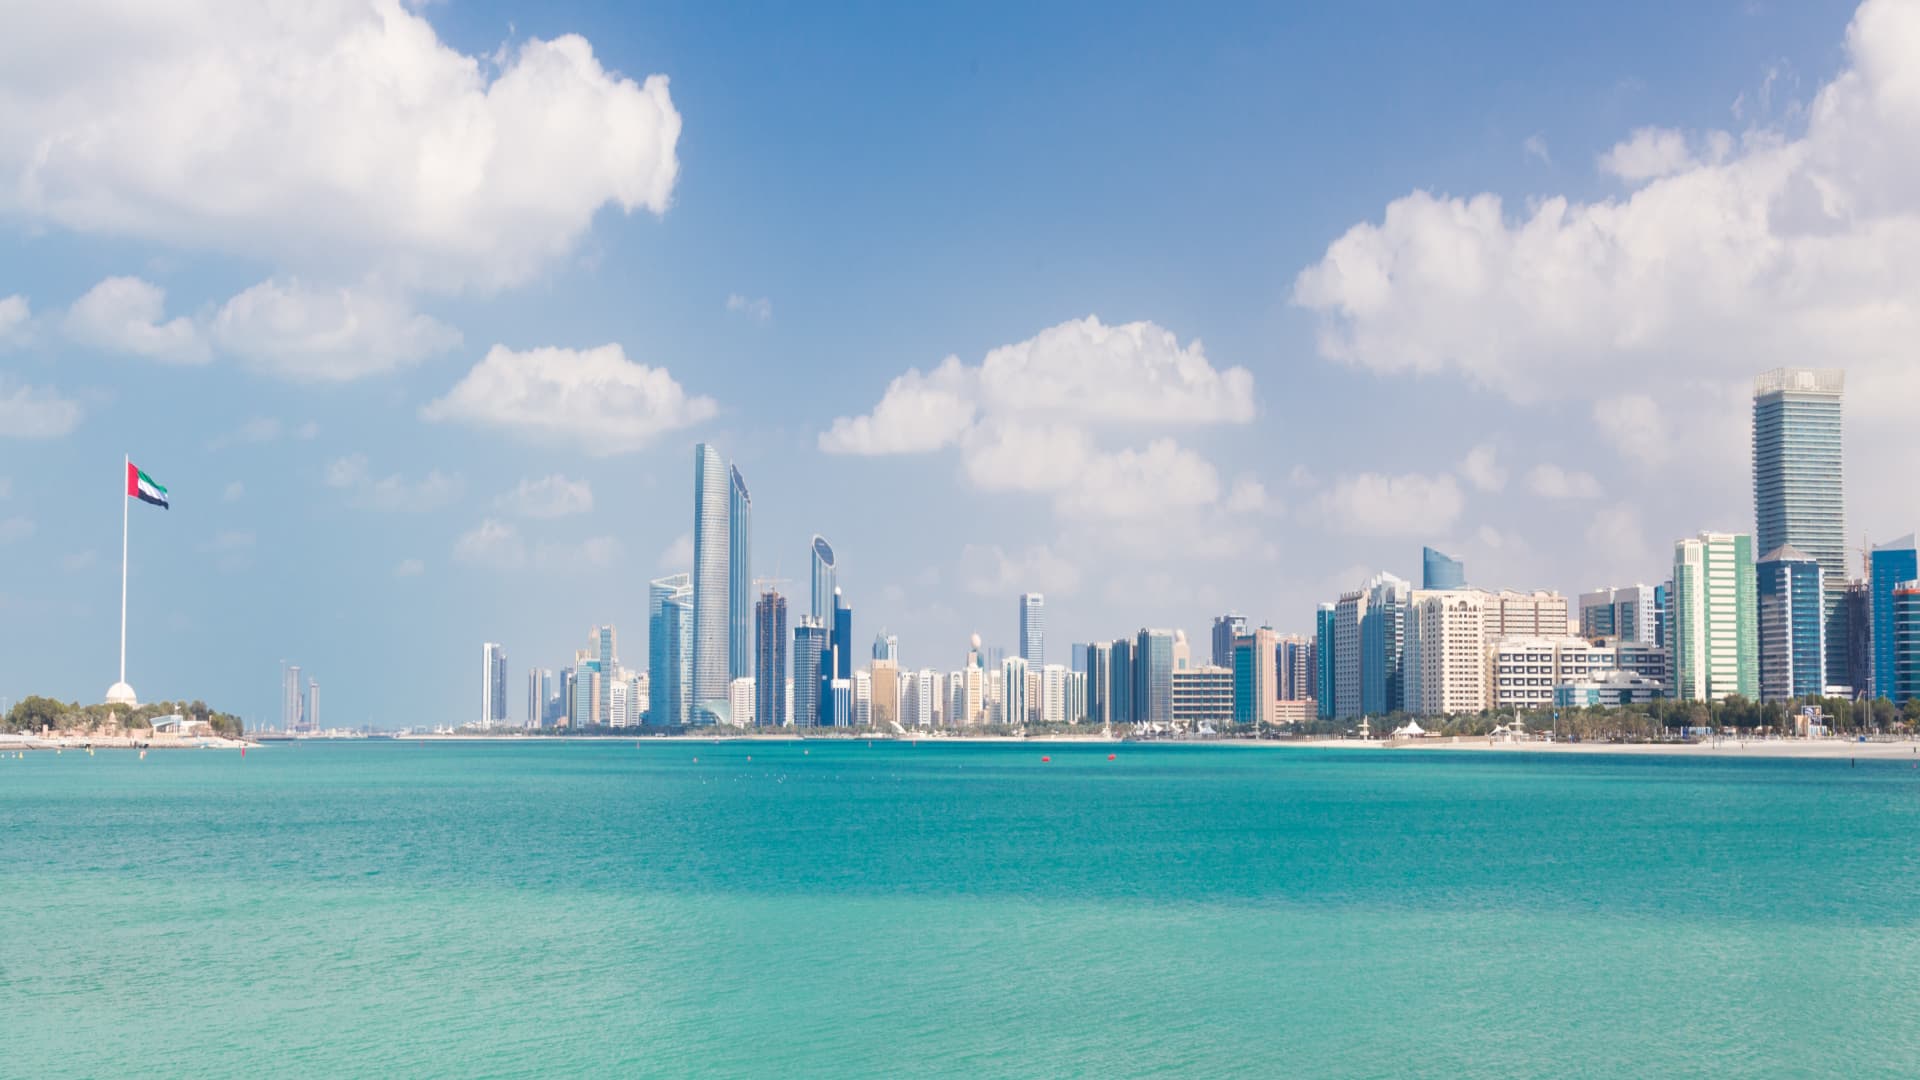 Abu Dhabi city skyline, United Arab Emirates.